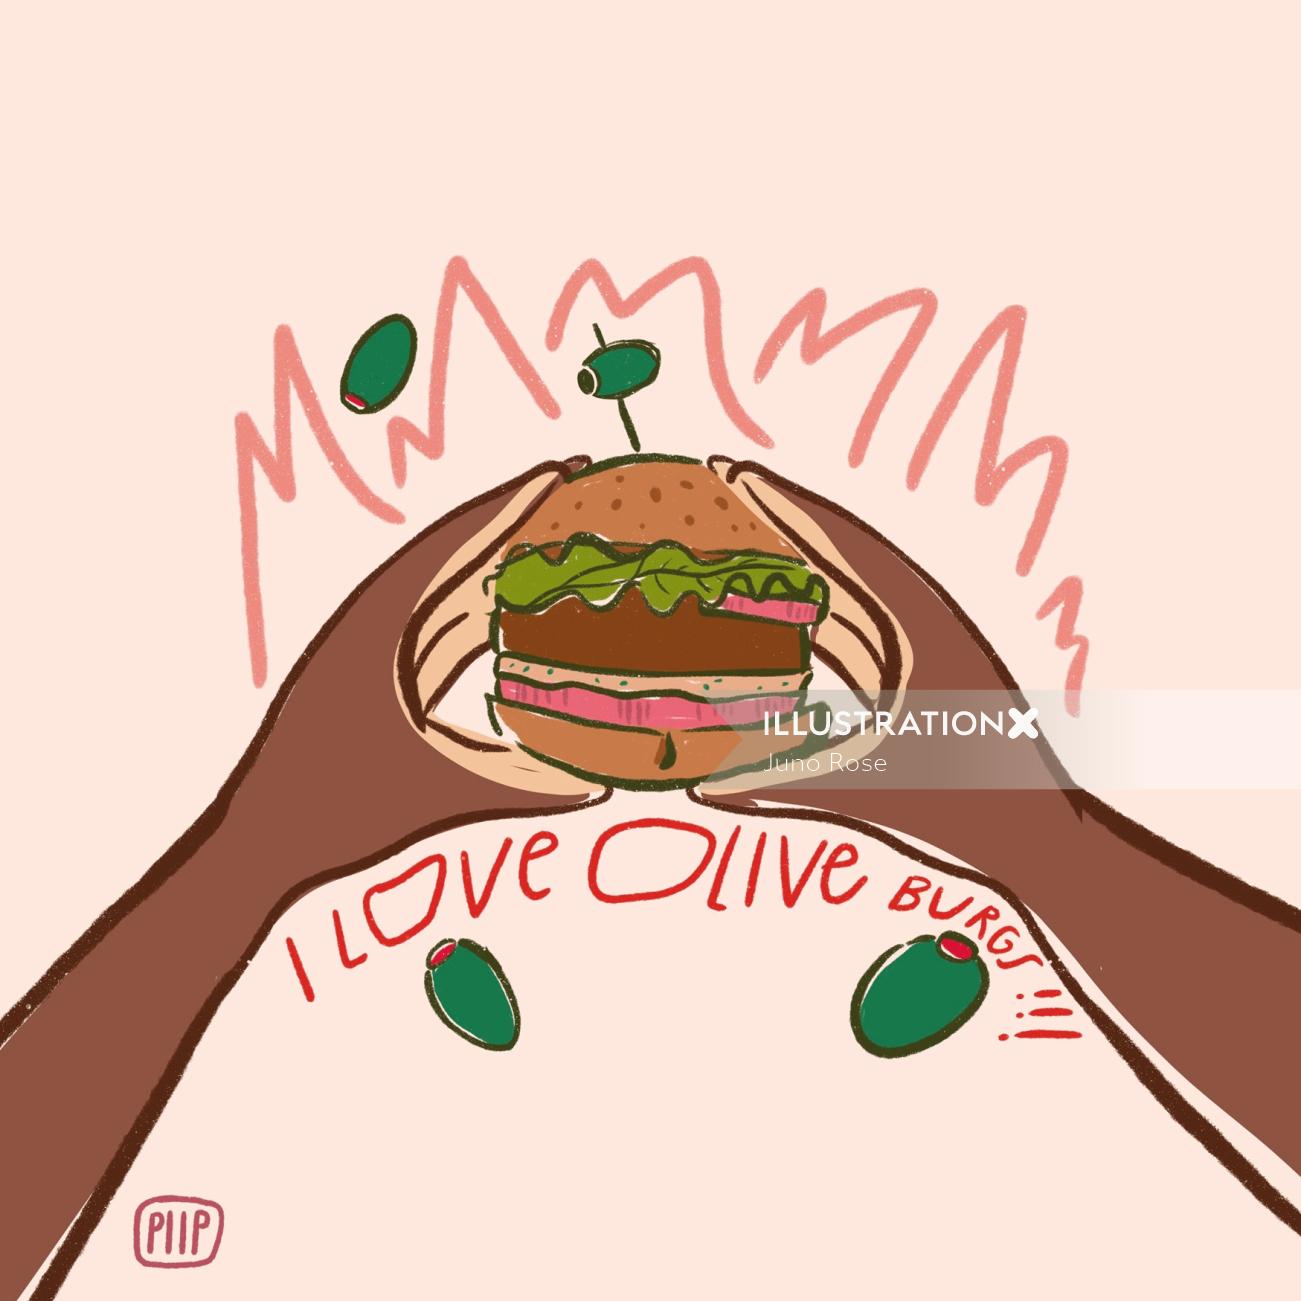 Olive Burger comme image de nourriture